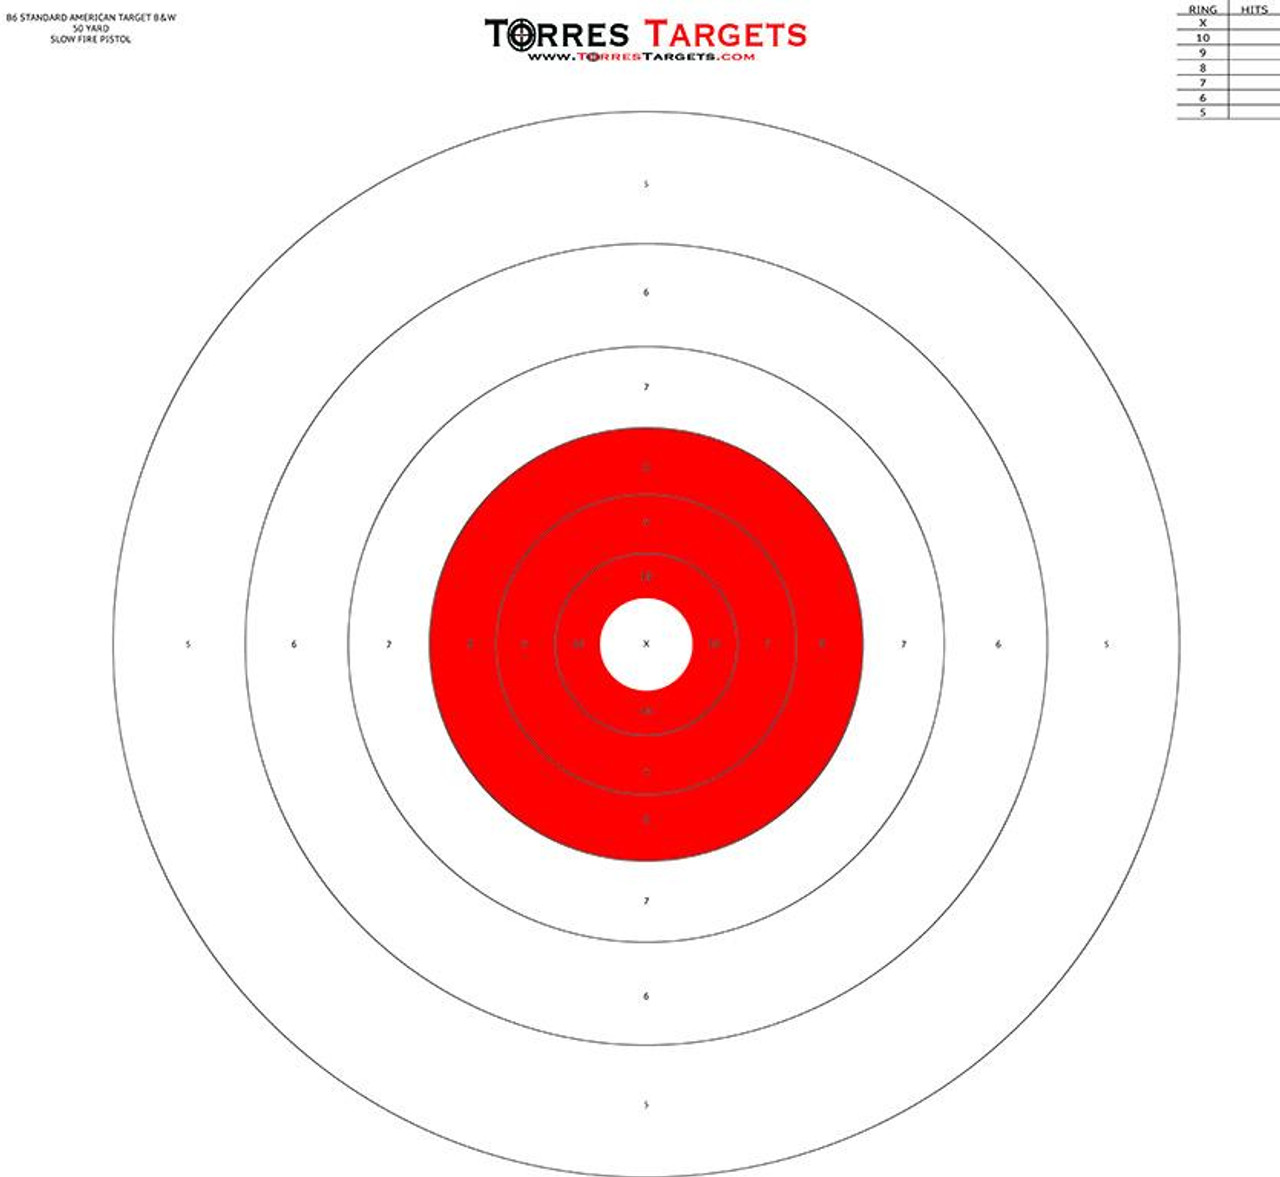 b6 style bullseye target red from torrestargets com